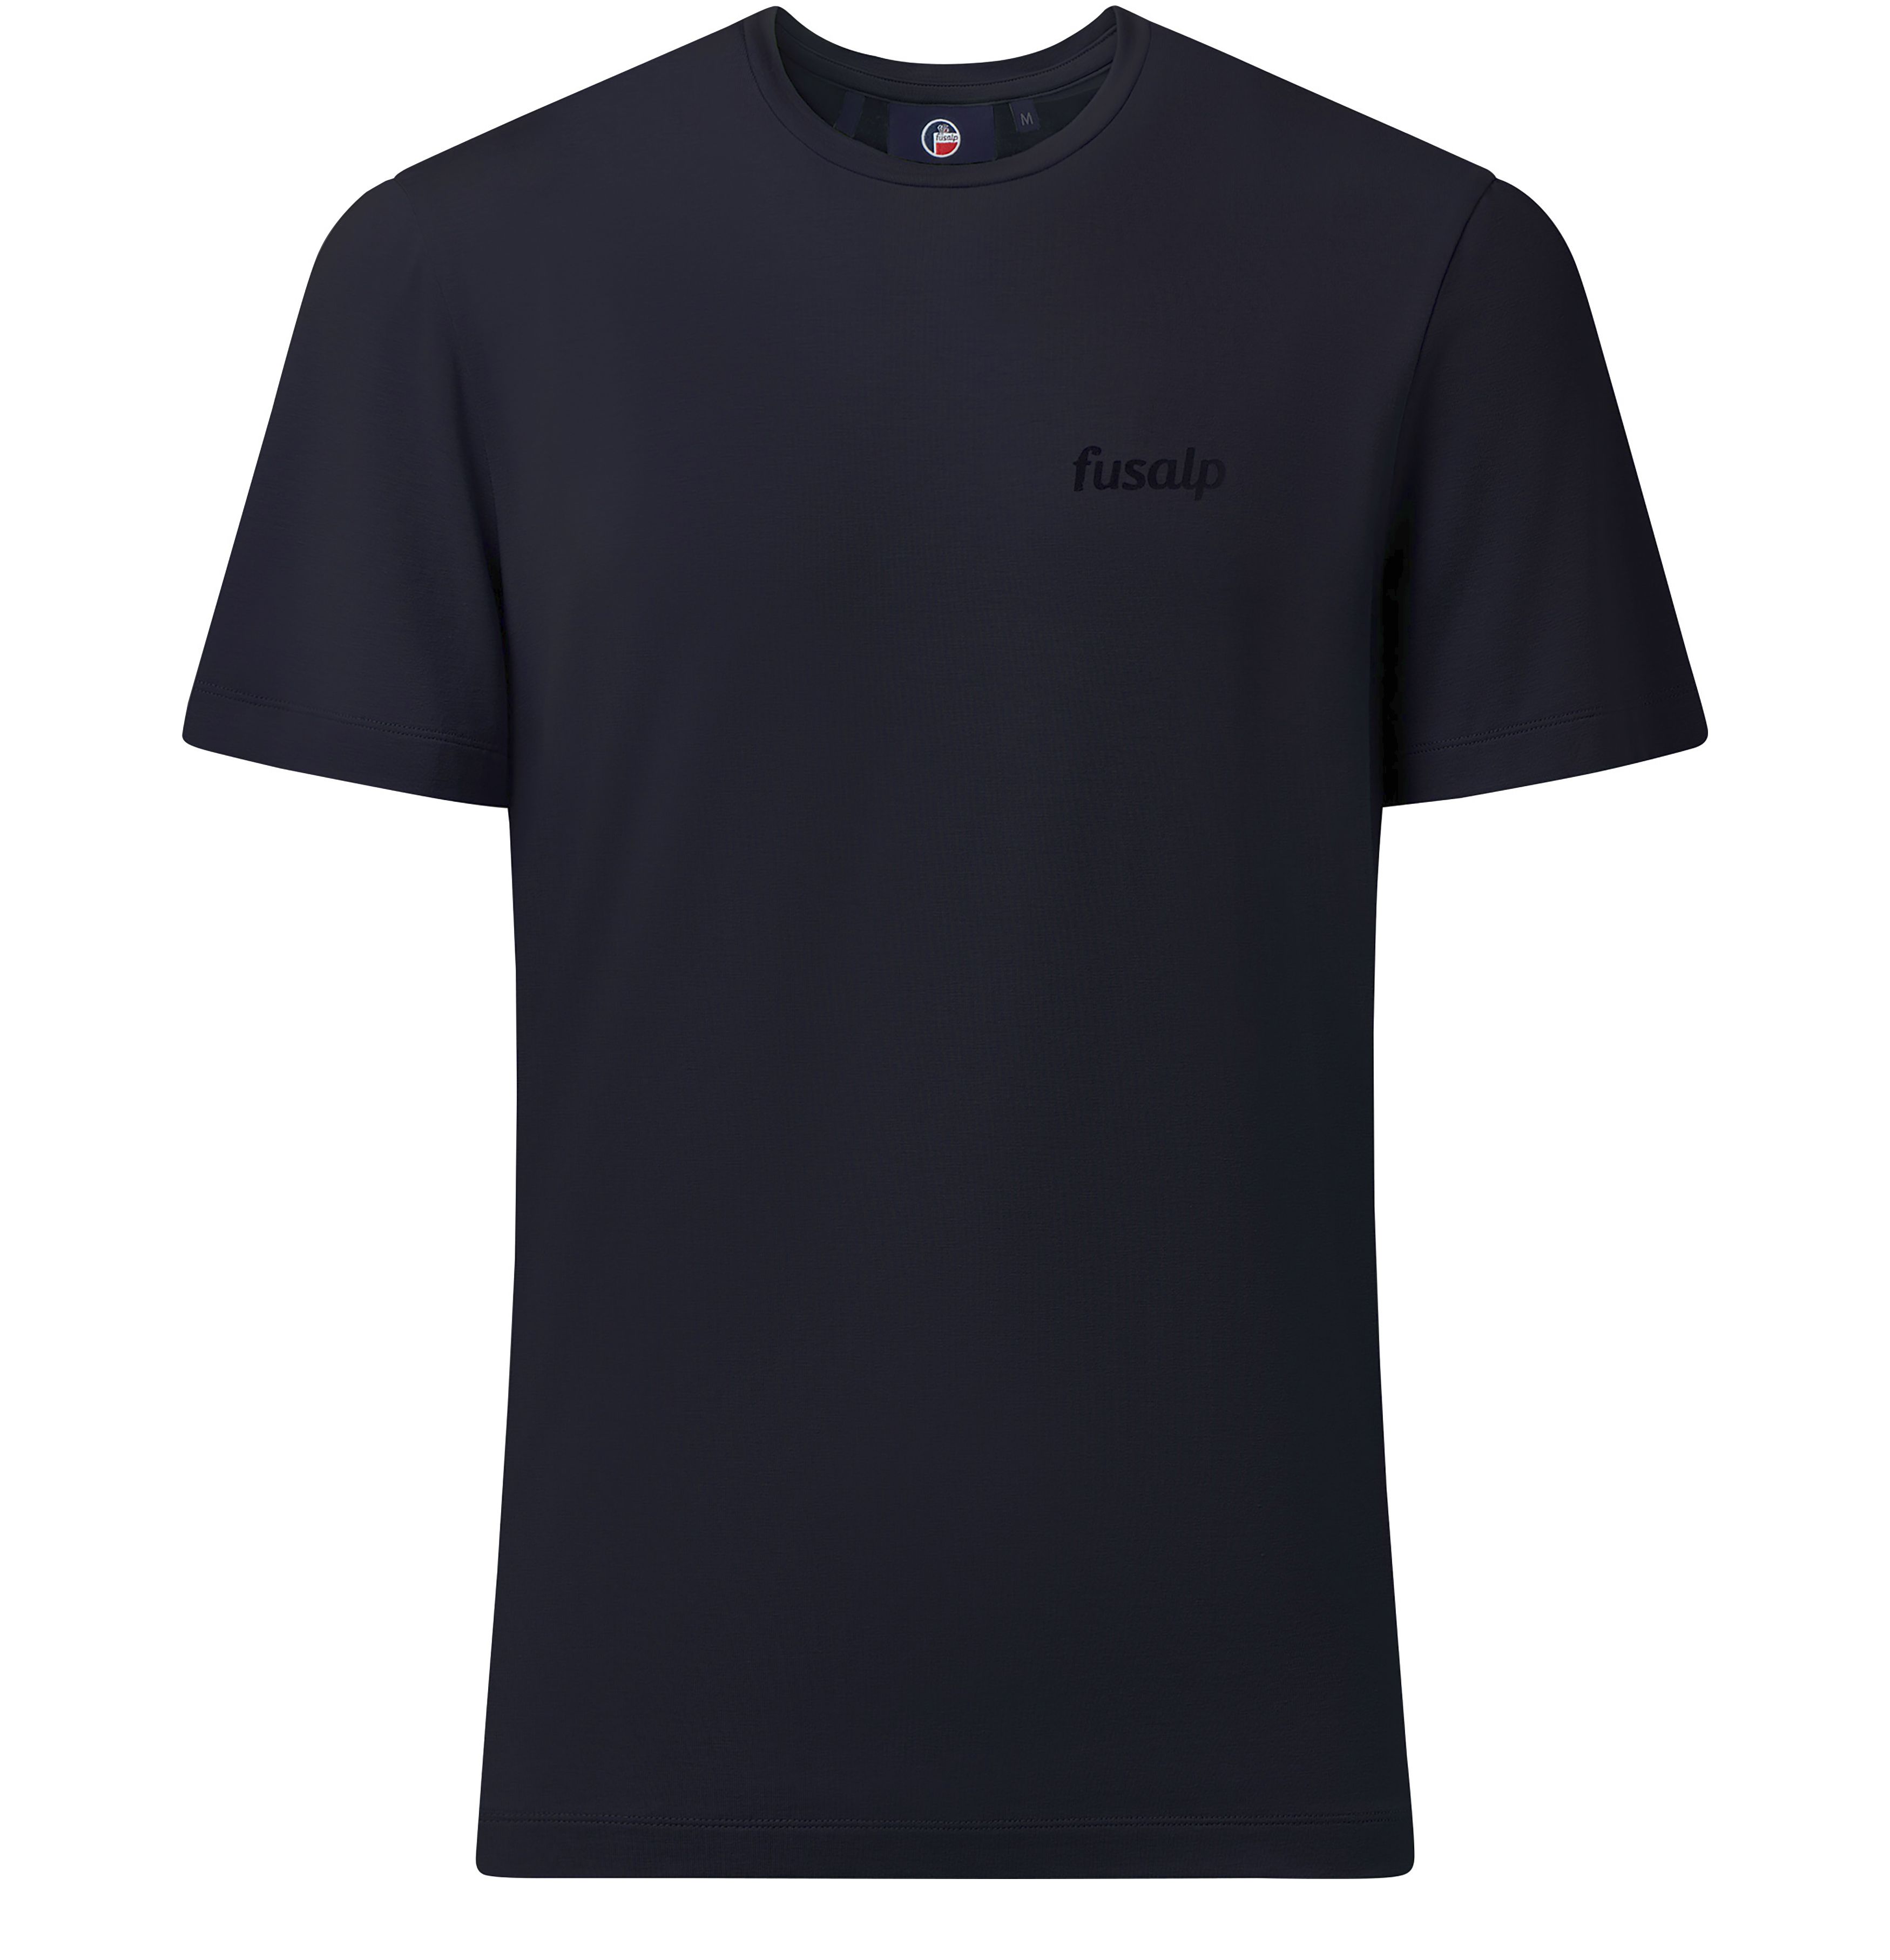 Fusalp Adel T-Shirt